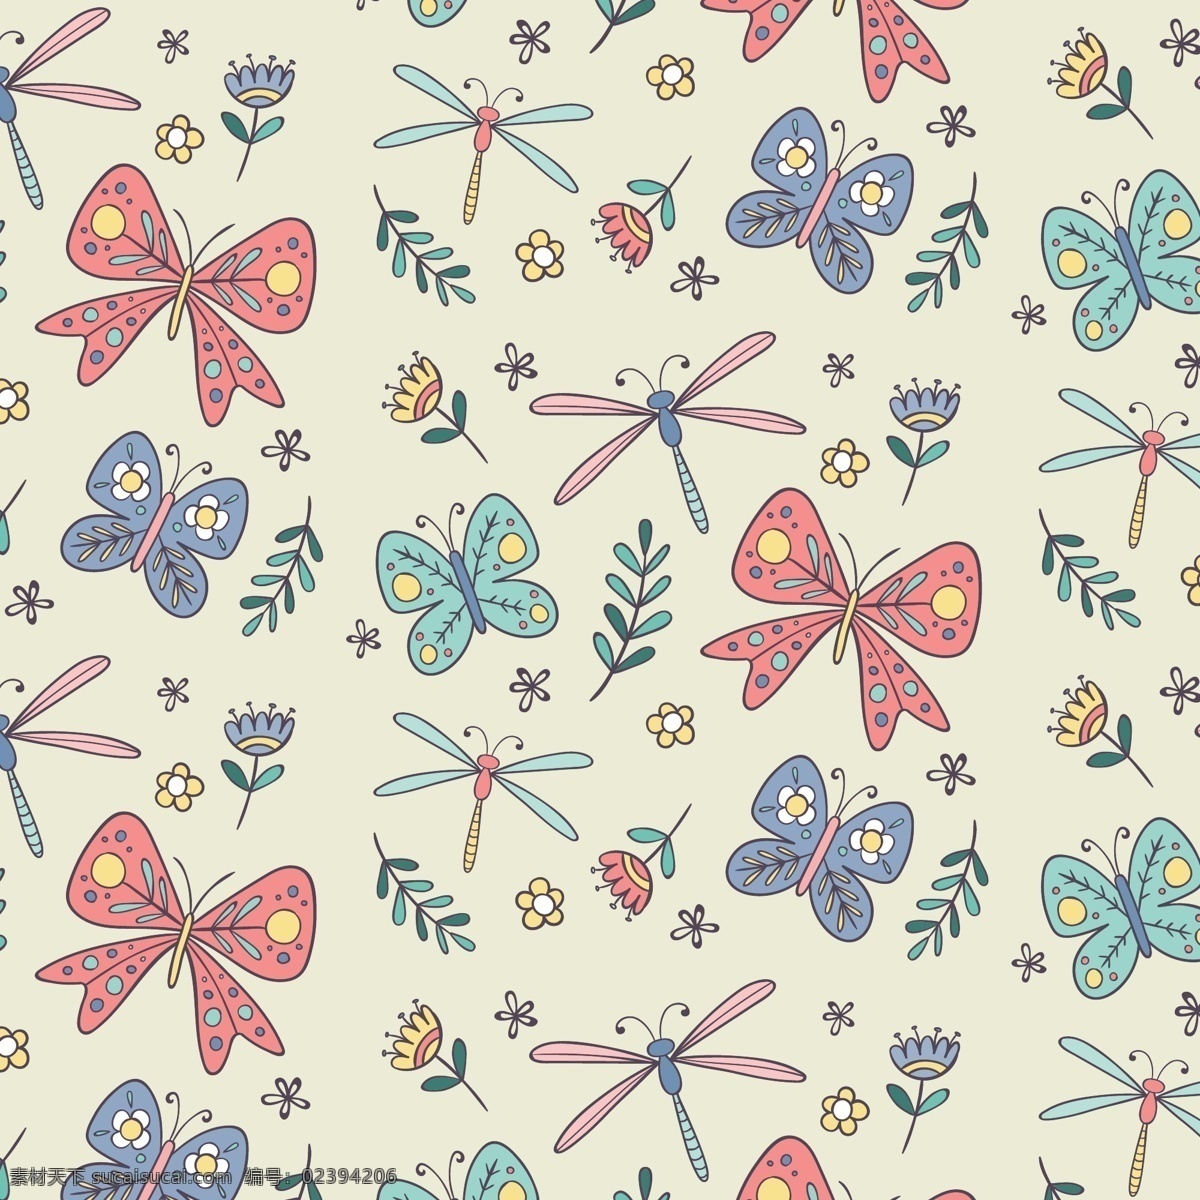 手工 绘制 蜻蜓 蝴蝶 图案 背景 花卉 手 自然 春天 画 可爱的 叶 花 植物 春 无缝 模式